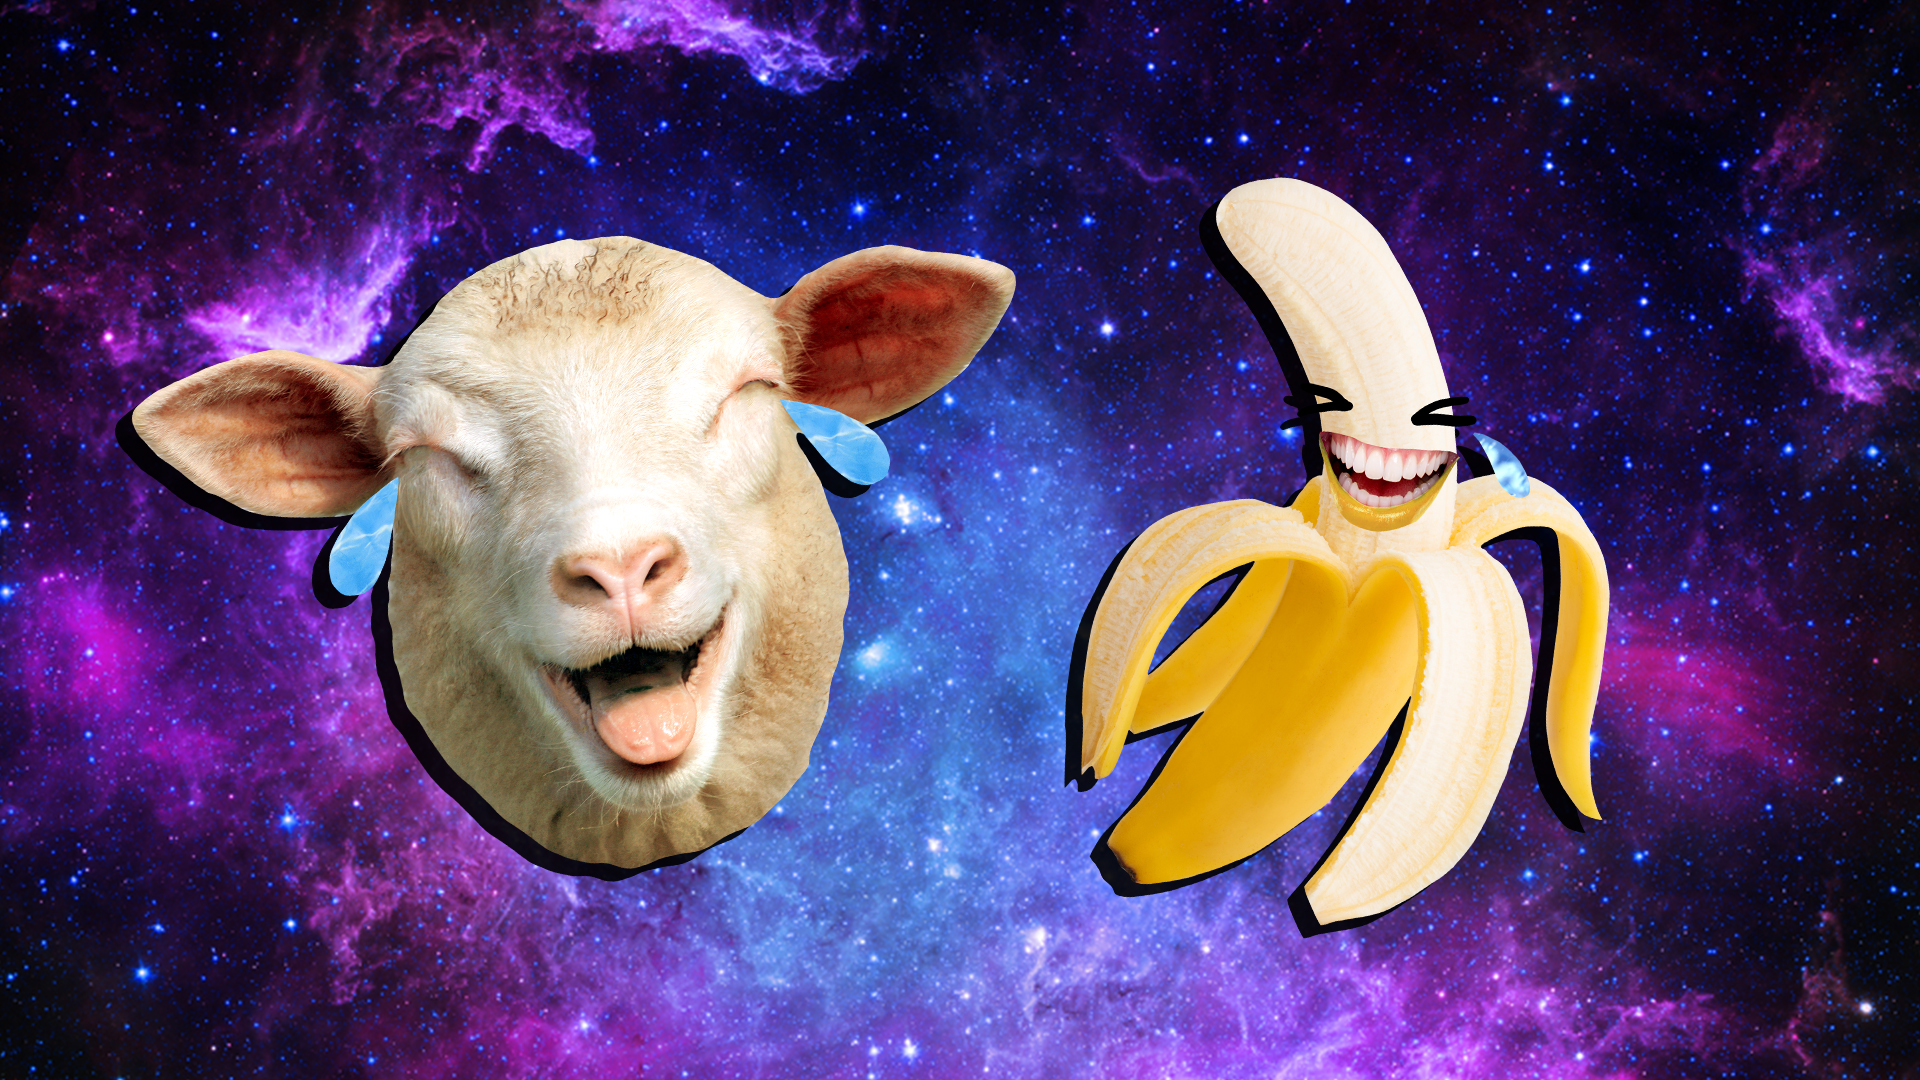 A cry laughing banana and sheep